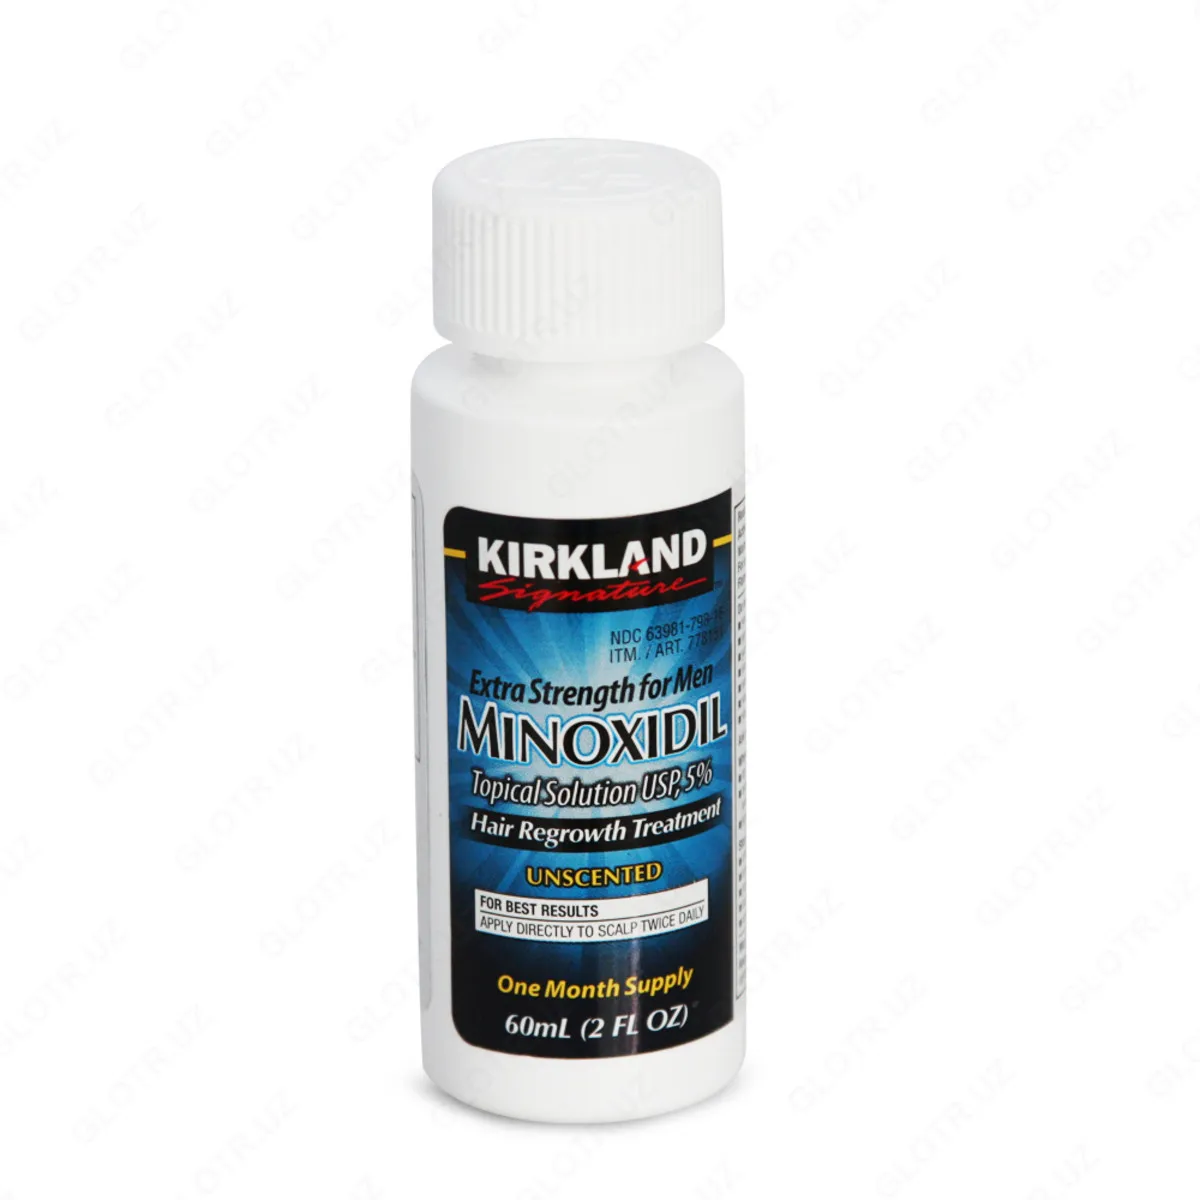 Minoxidil Kirkland 5% - Препарат для роста волос и бороды#3